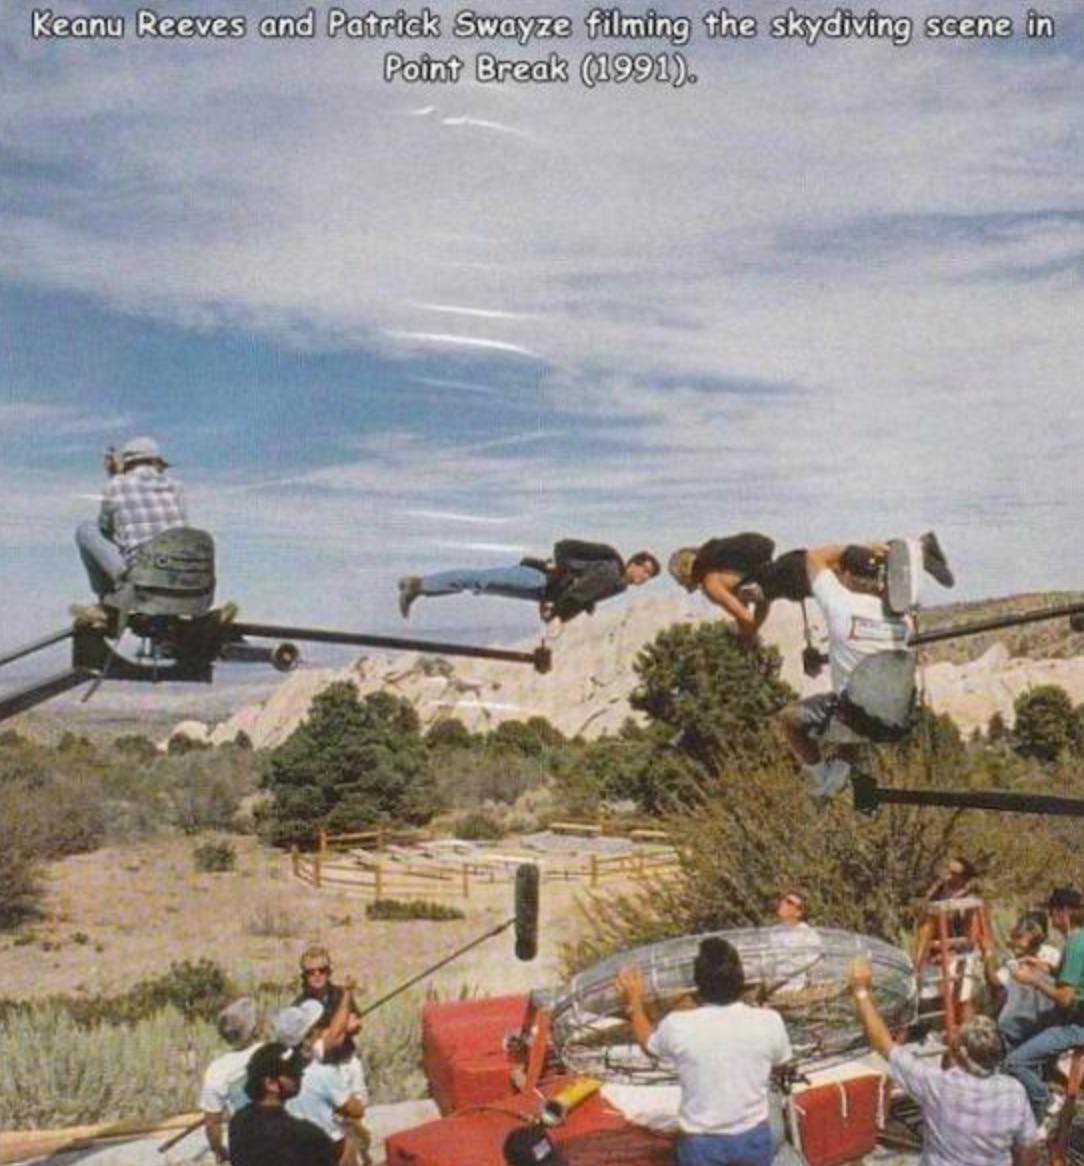 patrick swayze and keanu reeves - Keanu Reeves and Patrick Swayze filming the skydiving scene in Point Break 1991.